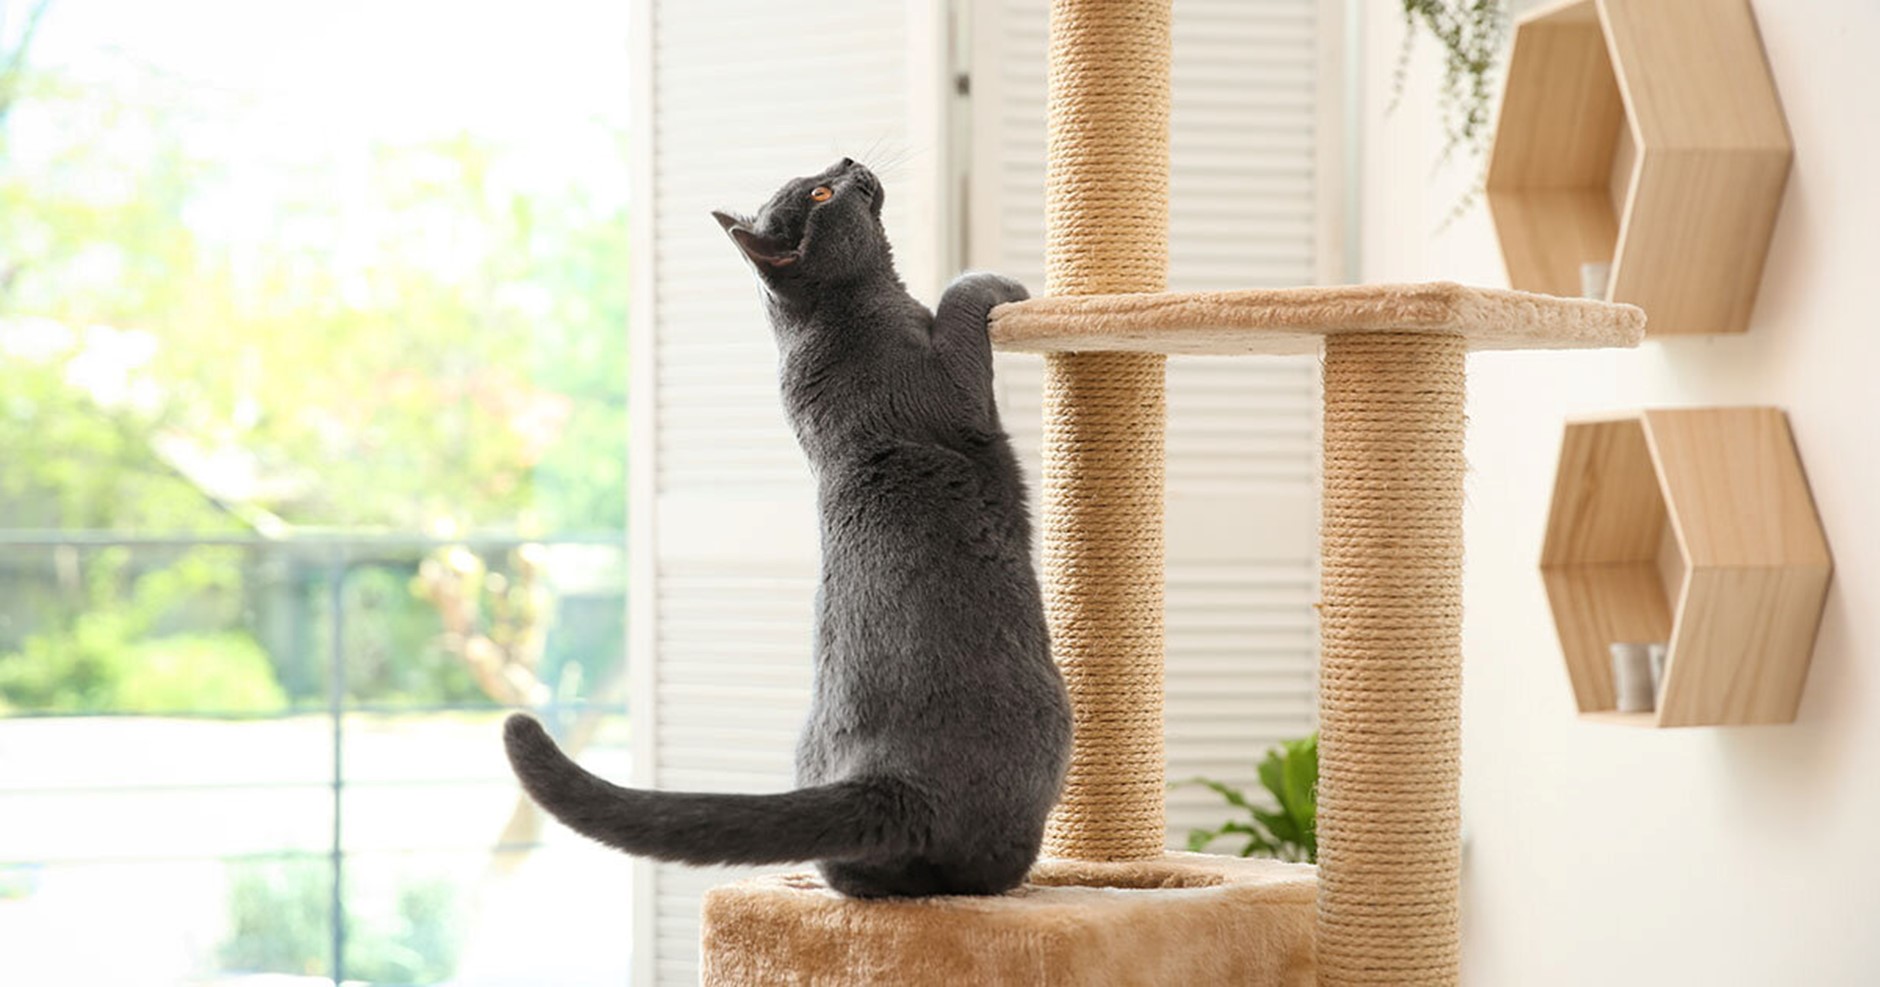 Gato cinza escalando a torre de gato.